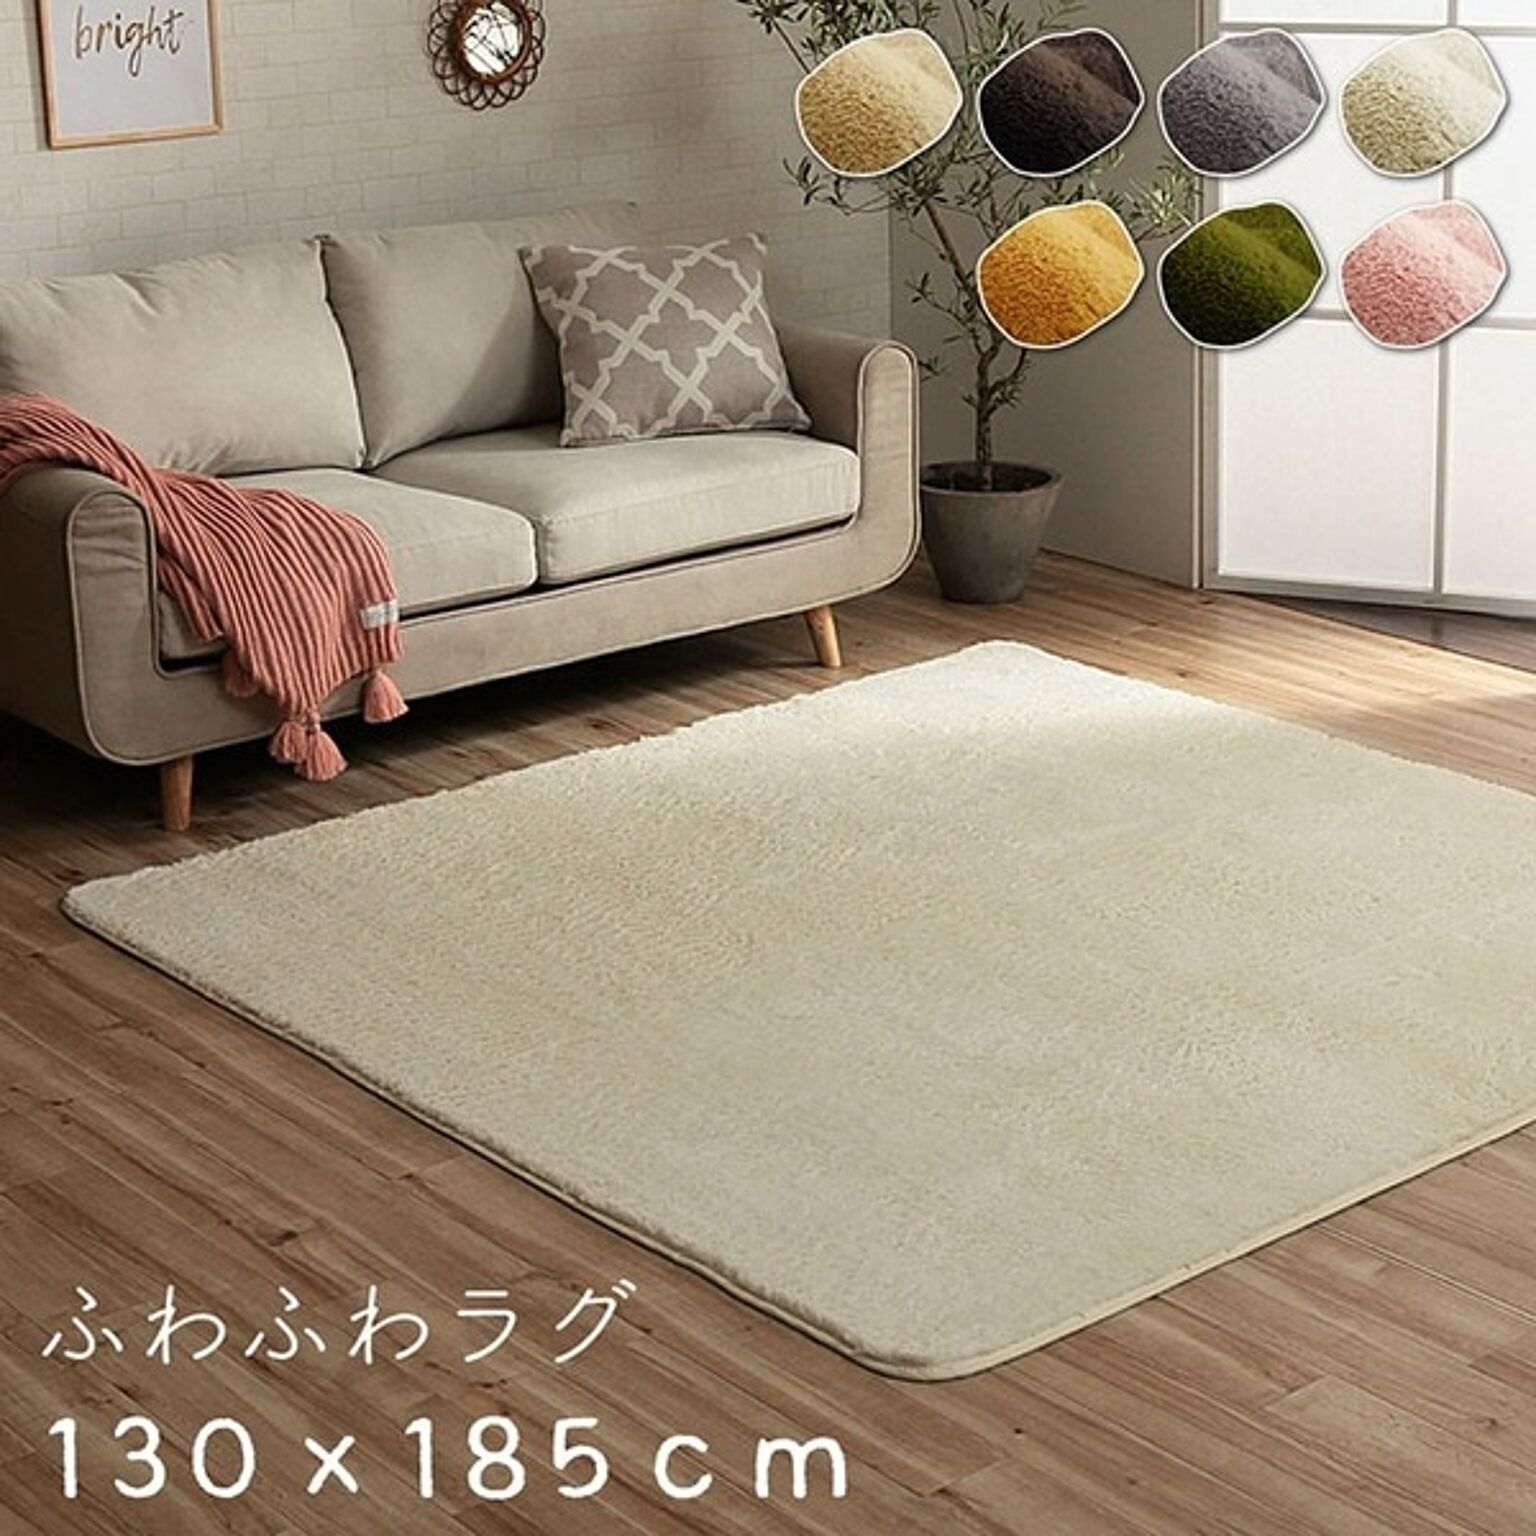 フィリップ フィラメント糸 ラグマット 1.5畳 約130×185cm オレンジ 床暖房対応